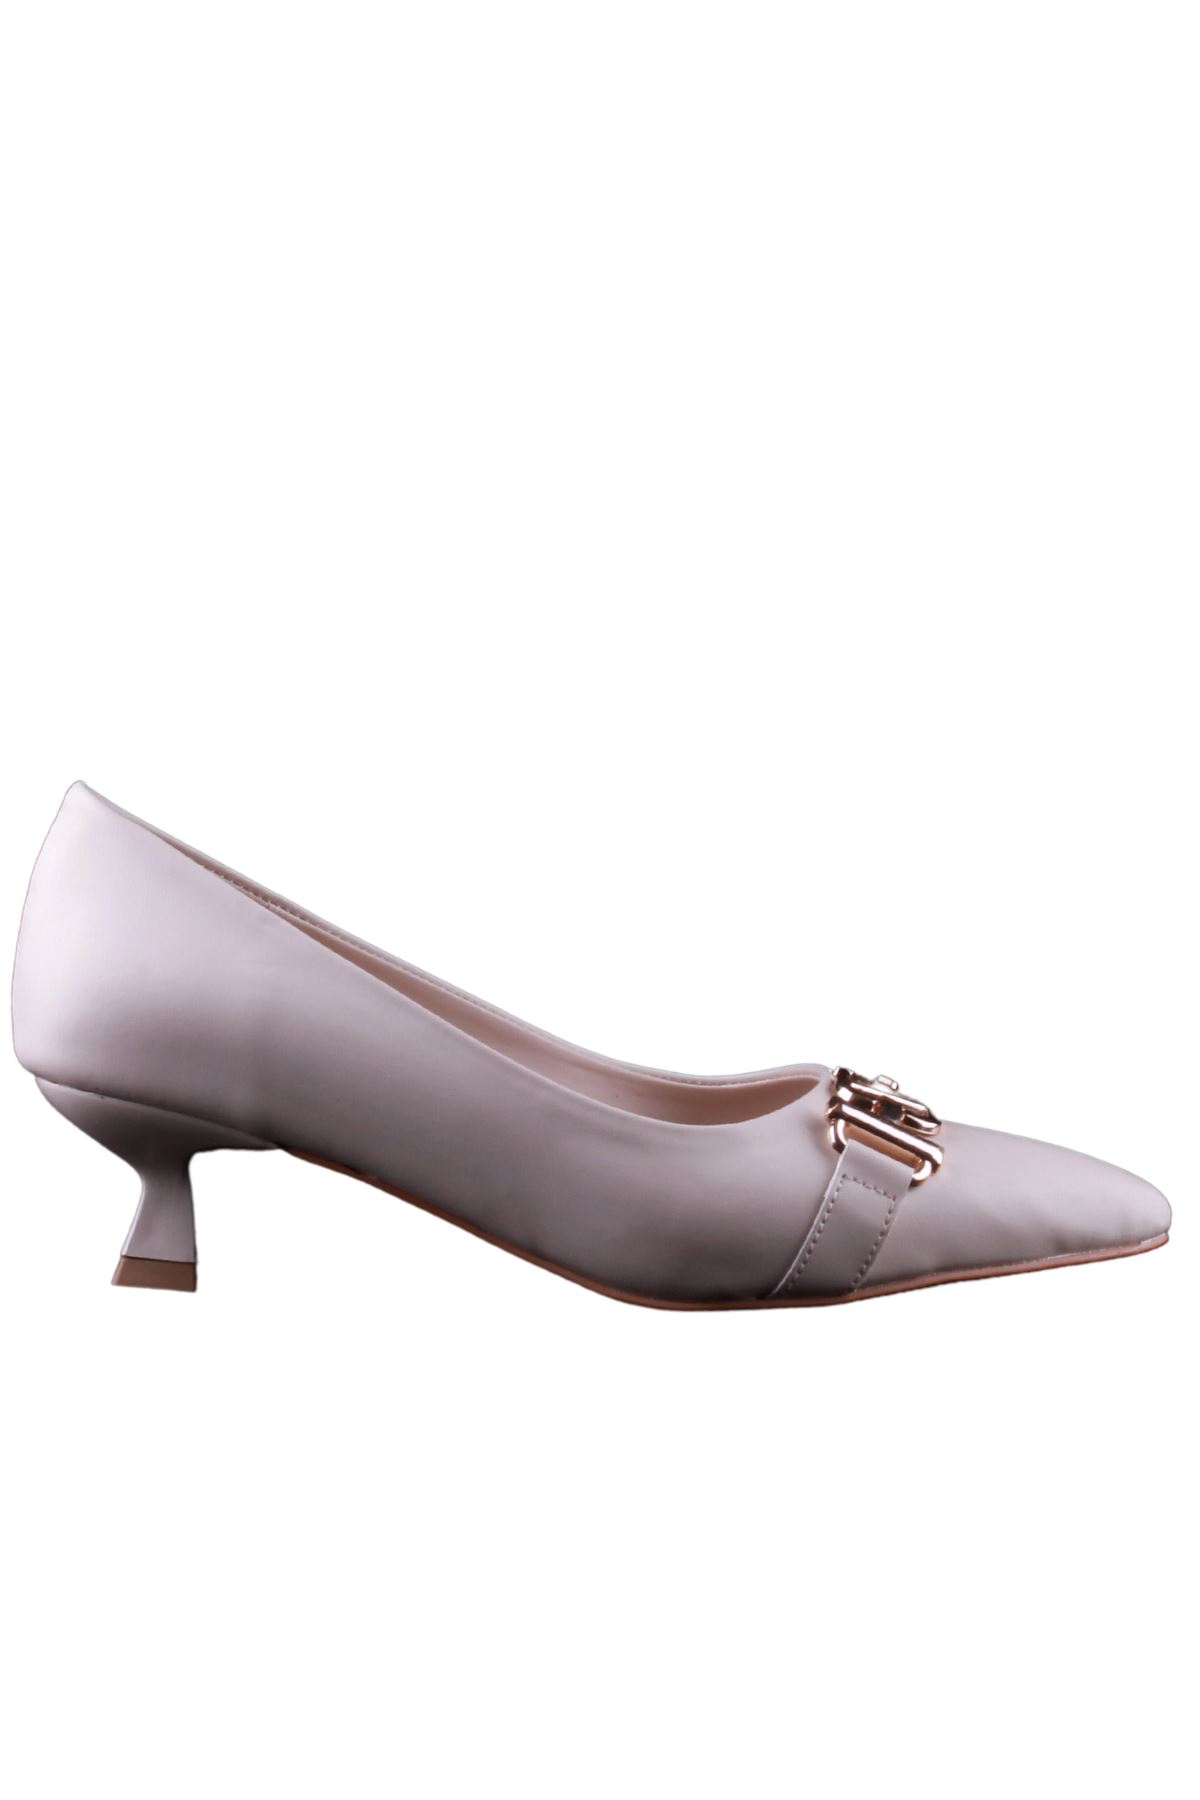 Kadın Krem Klasik Ayakkabı - K23.28.7453